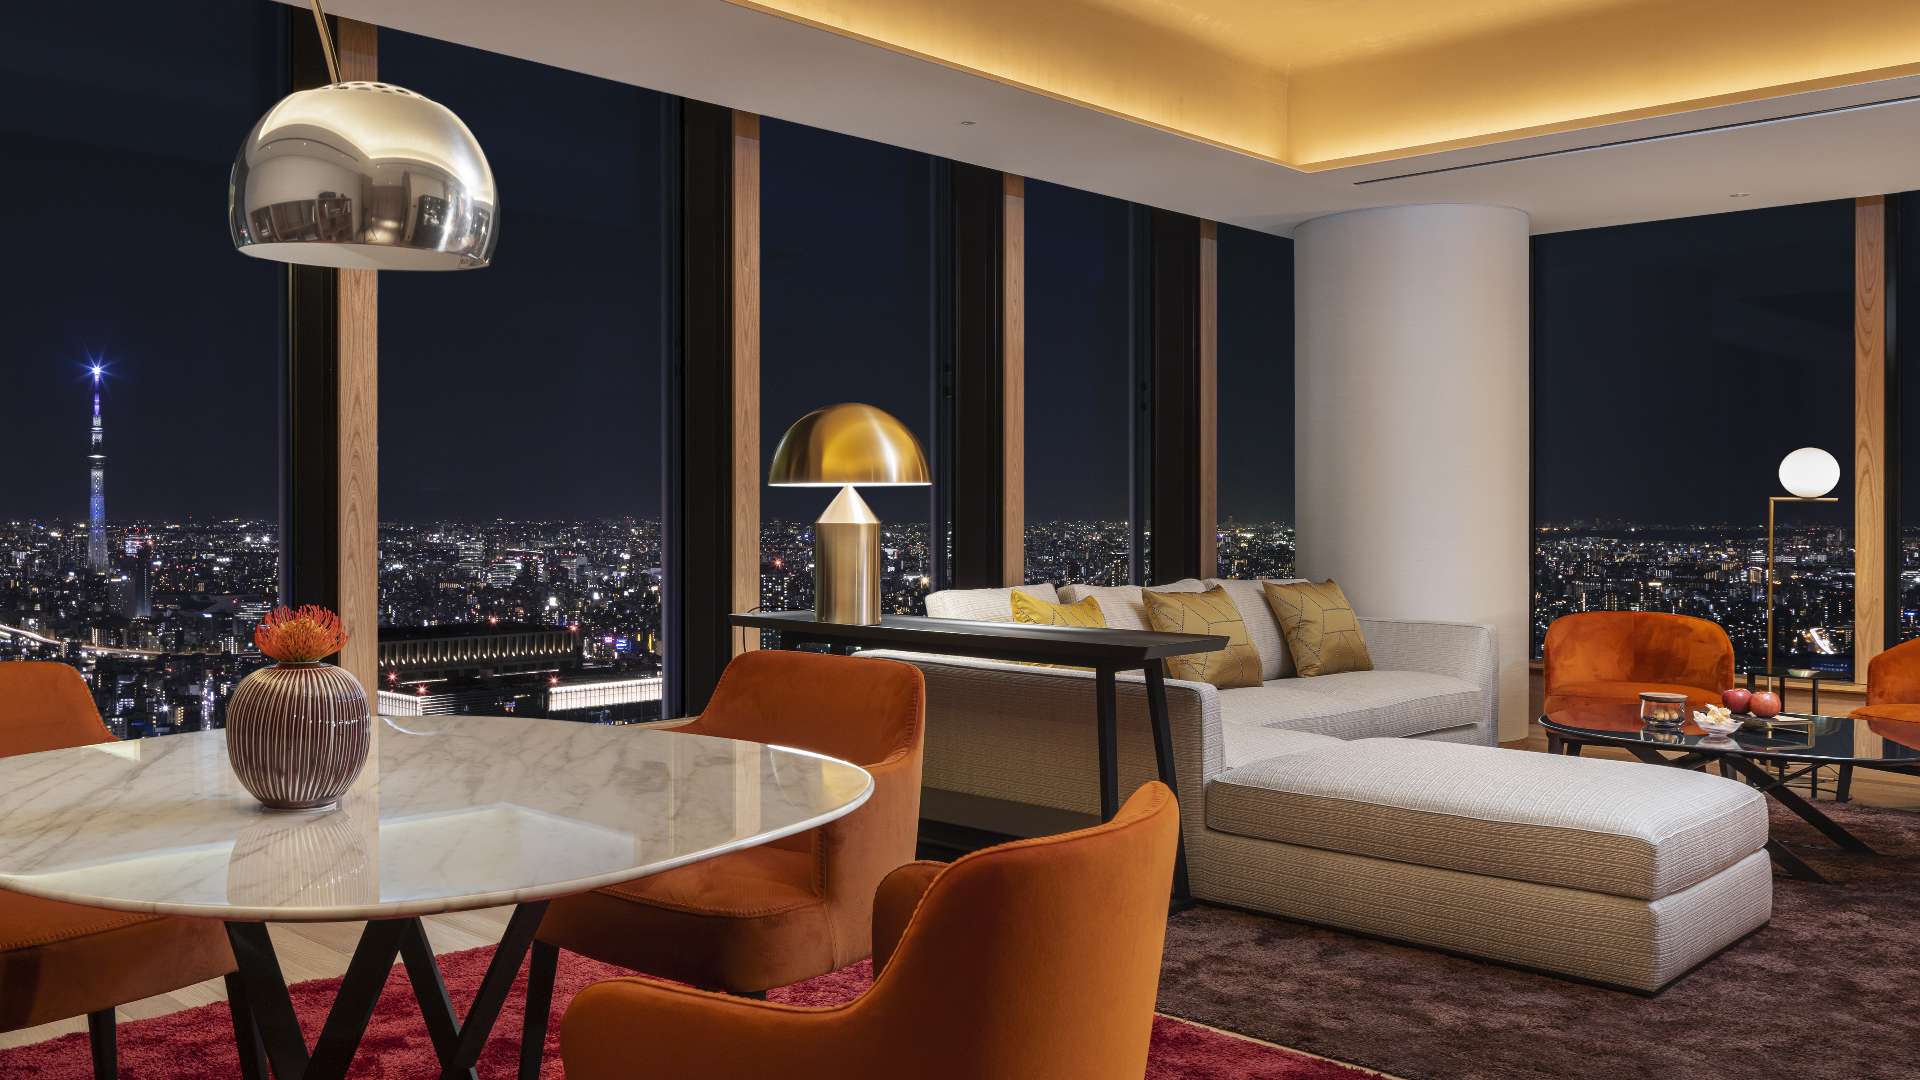 Bulgari Hotel Tokyo is where Italian grandeur meets Japanese luxury